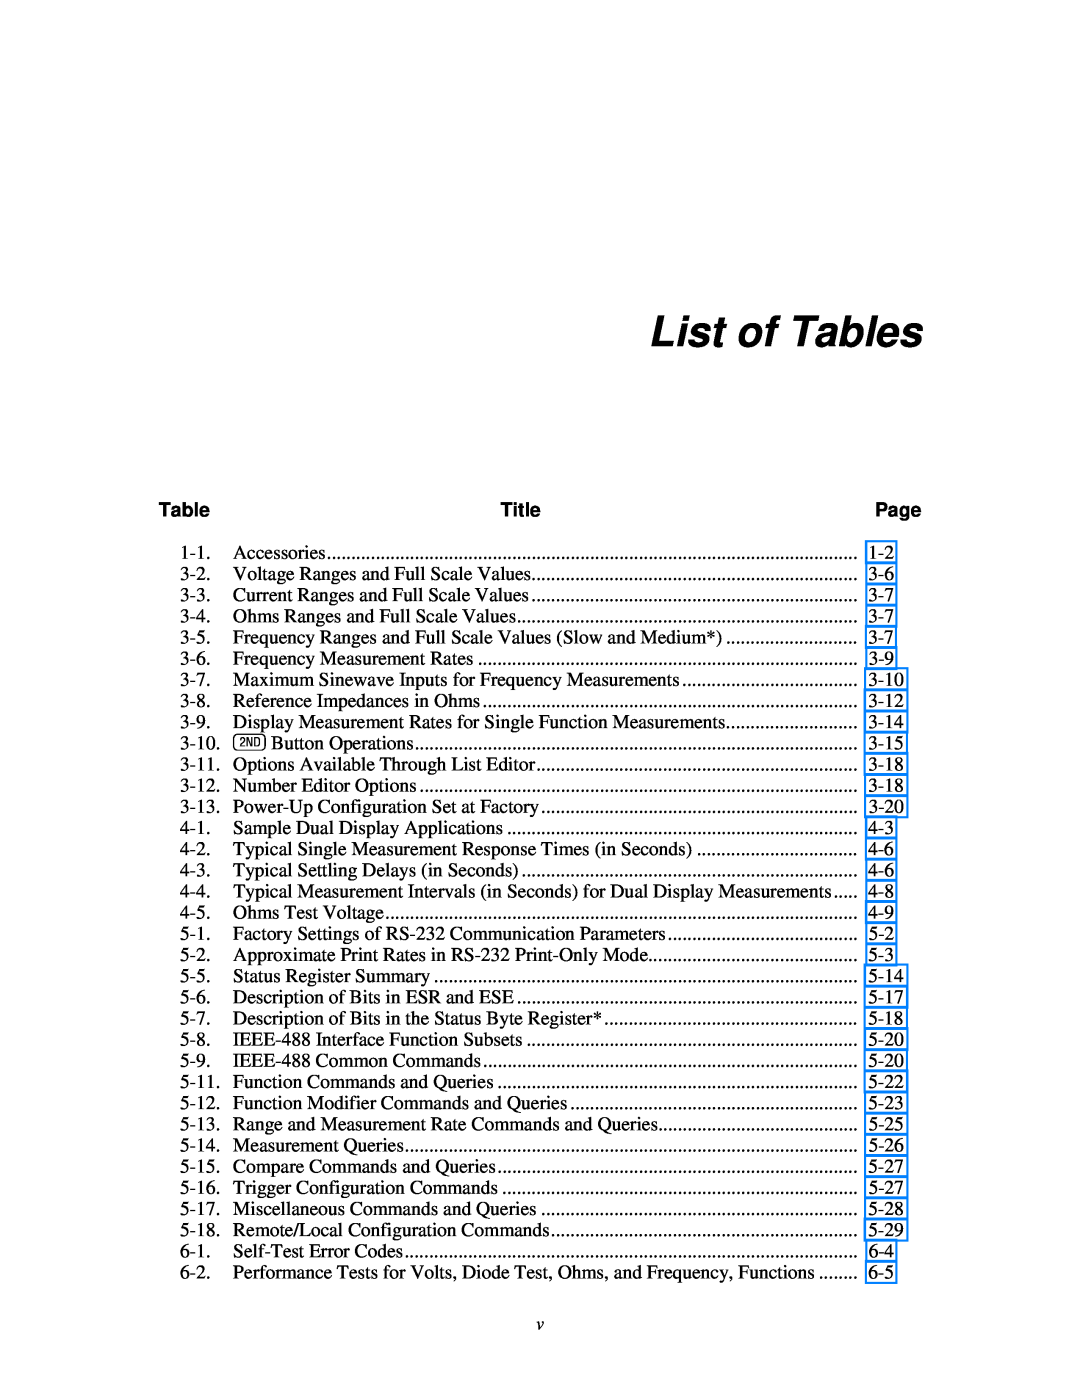 Fluke 45 user manual List of Tables, Title 